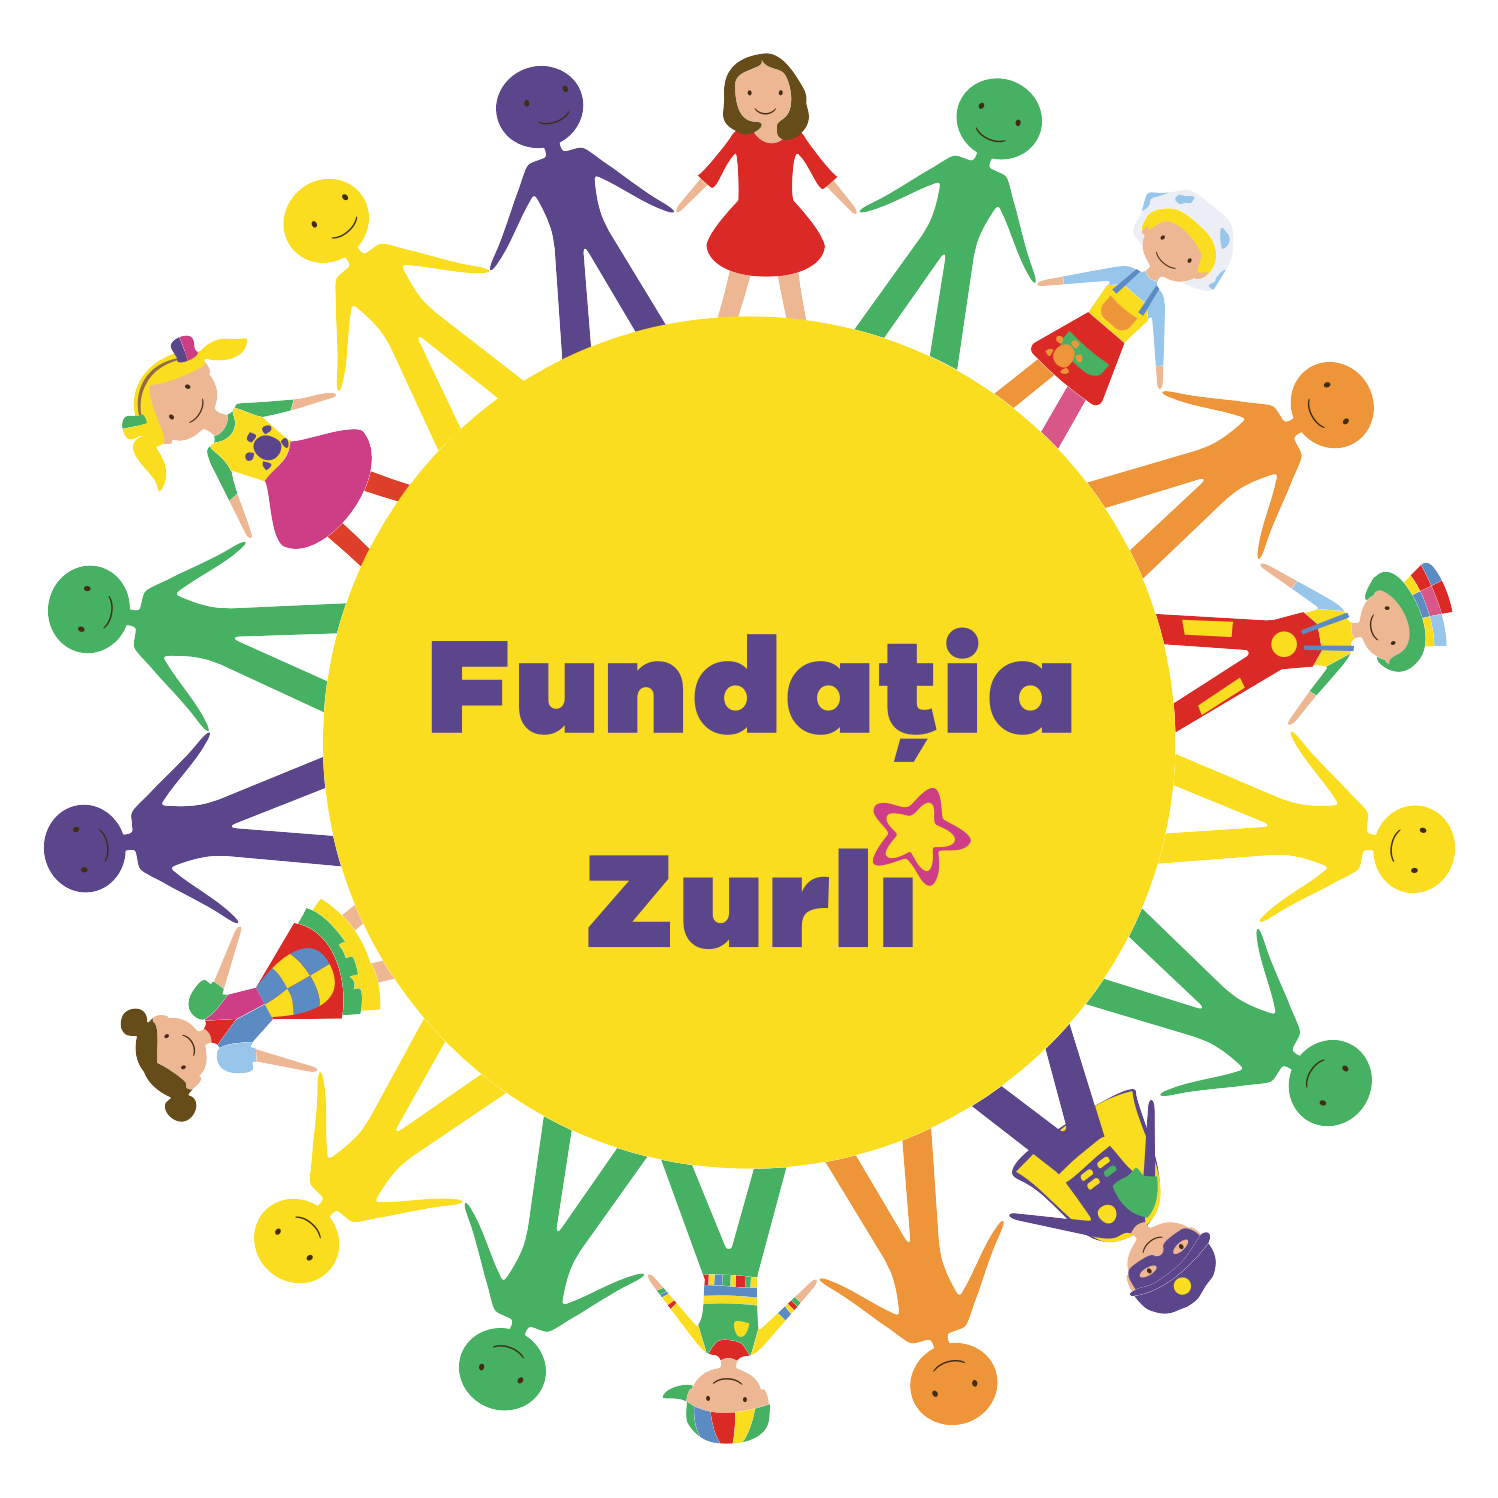 Fundatia Zurli logo